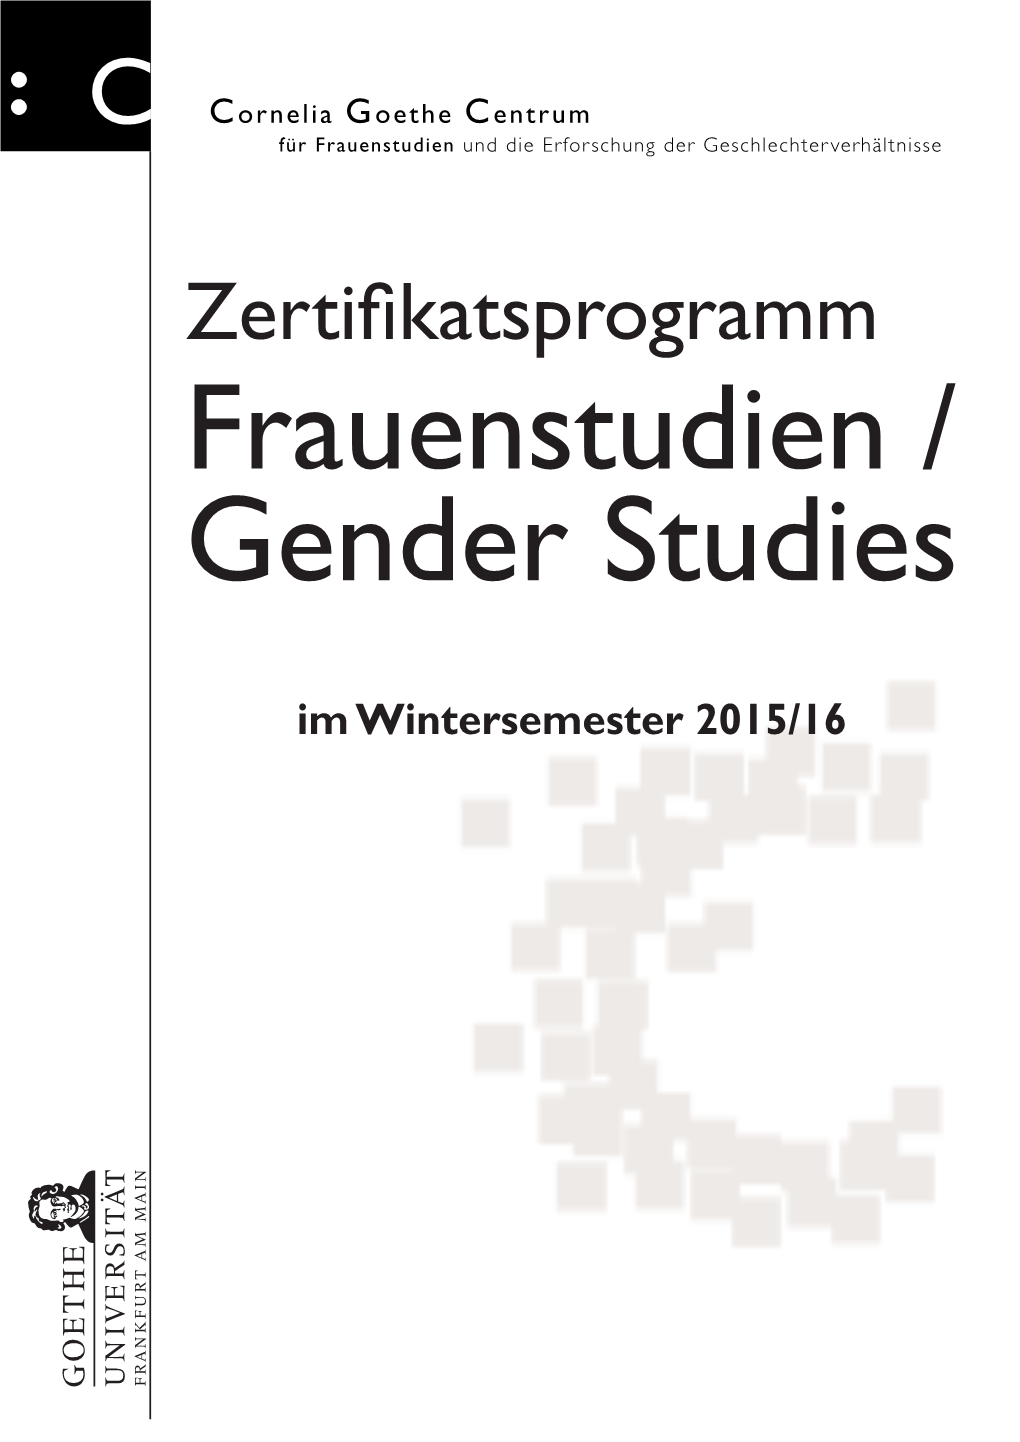 Zertifikatsprogramm Frauenstudien / Gender Studies